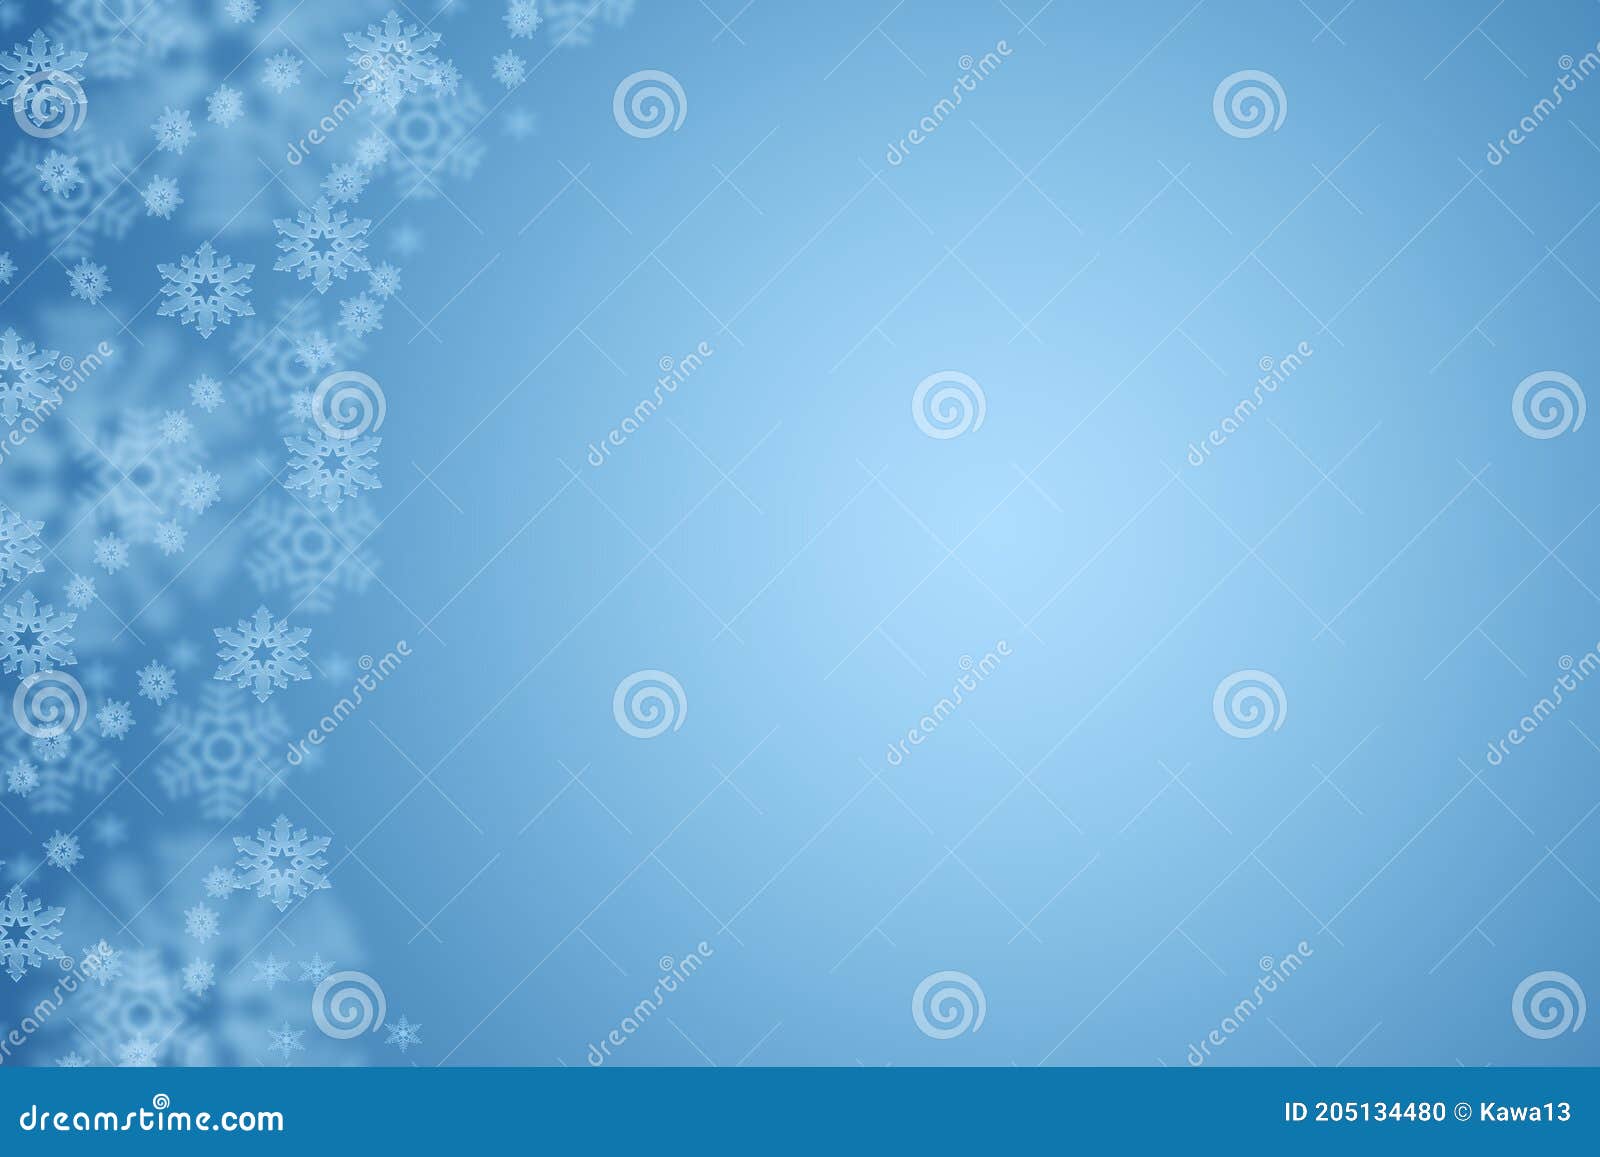 verwerken grens Geboorte geven Achtergrond Van Pastel- De Blauwe Kerst Met Sneeuwvlokken Stock Illustratie  - Illustration of vorst, zilver: 205134480